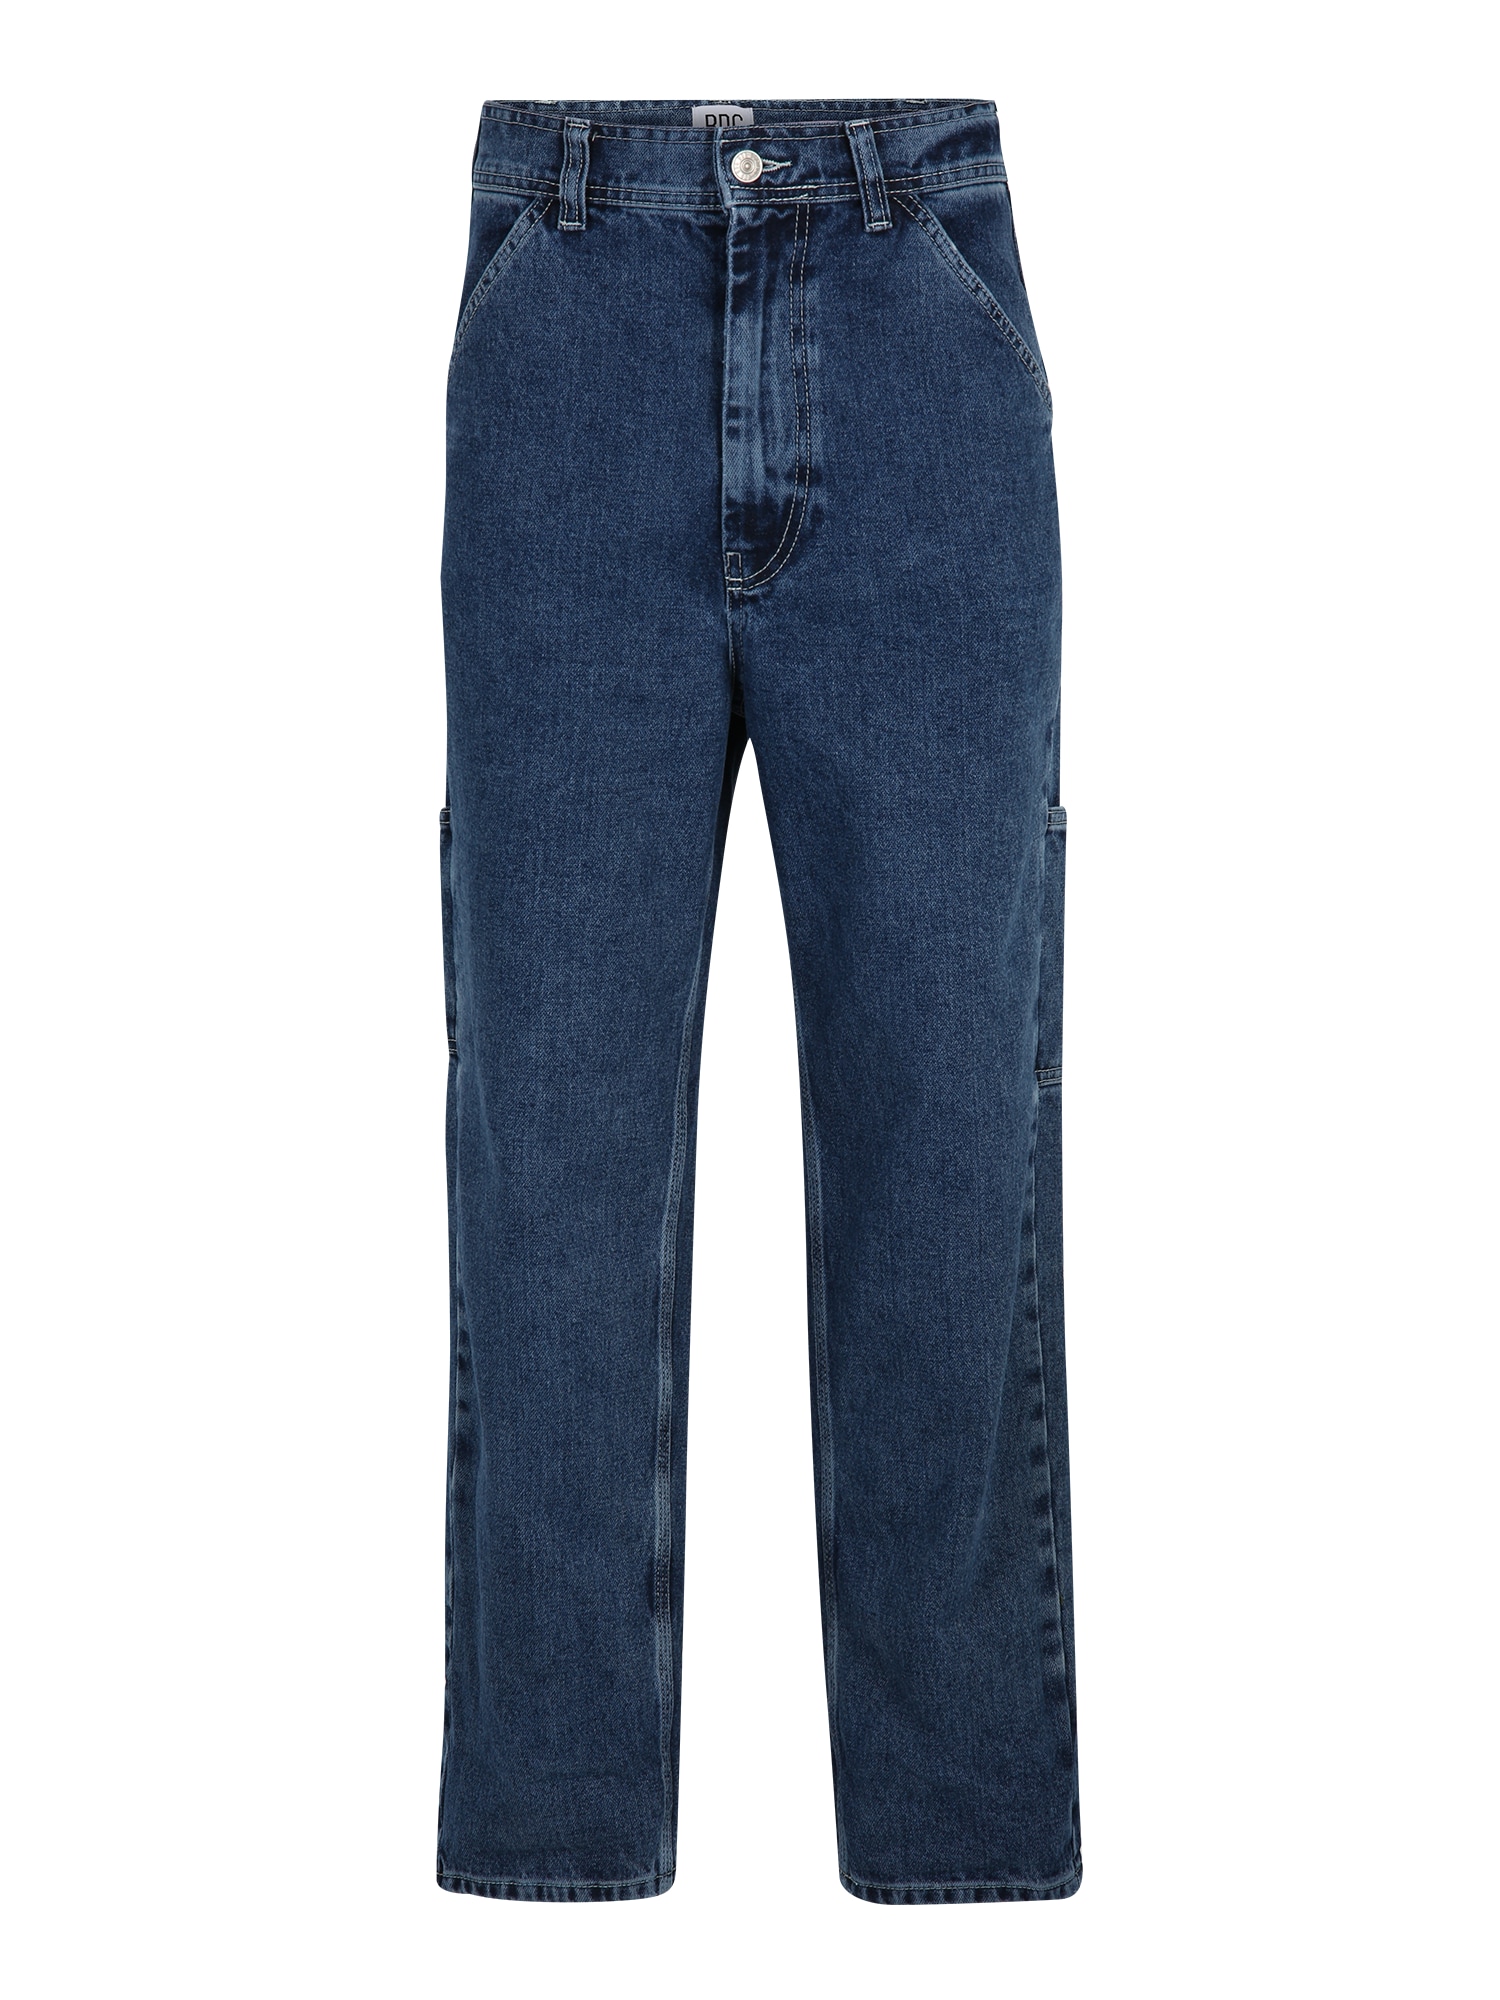 BDG Urban Outfitters Darbinio stiliaus džinsai 'CARPENTER' tamsiai (džinso) mėlyna